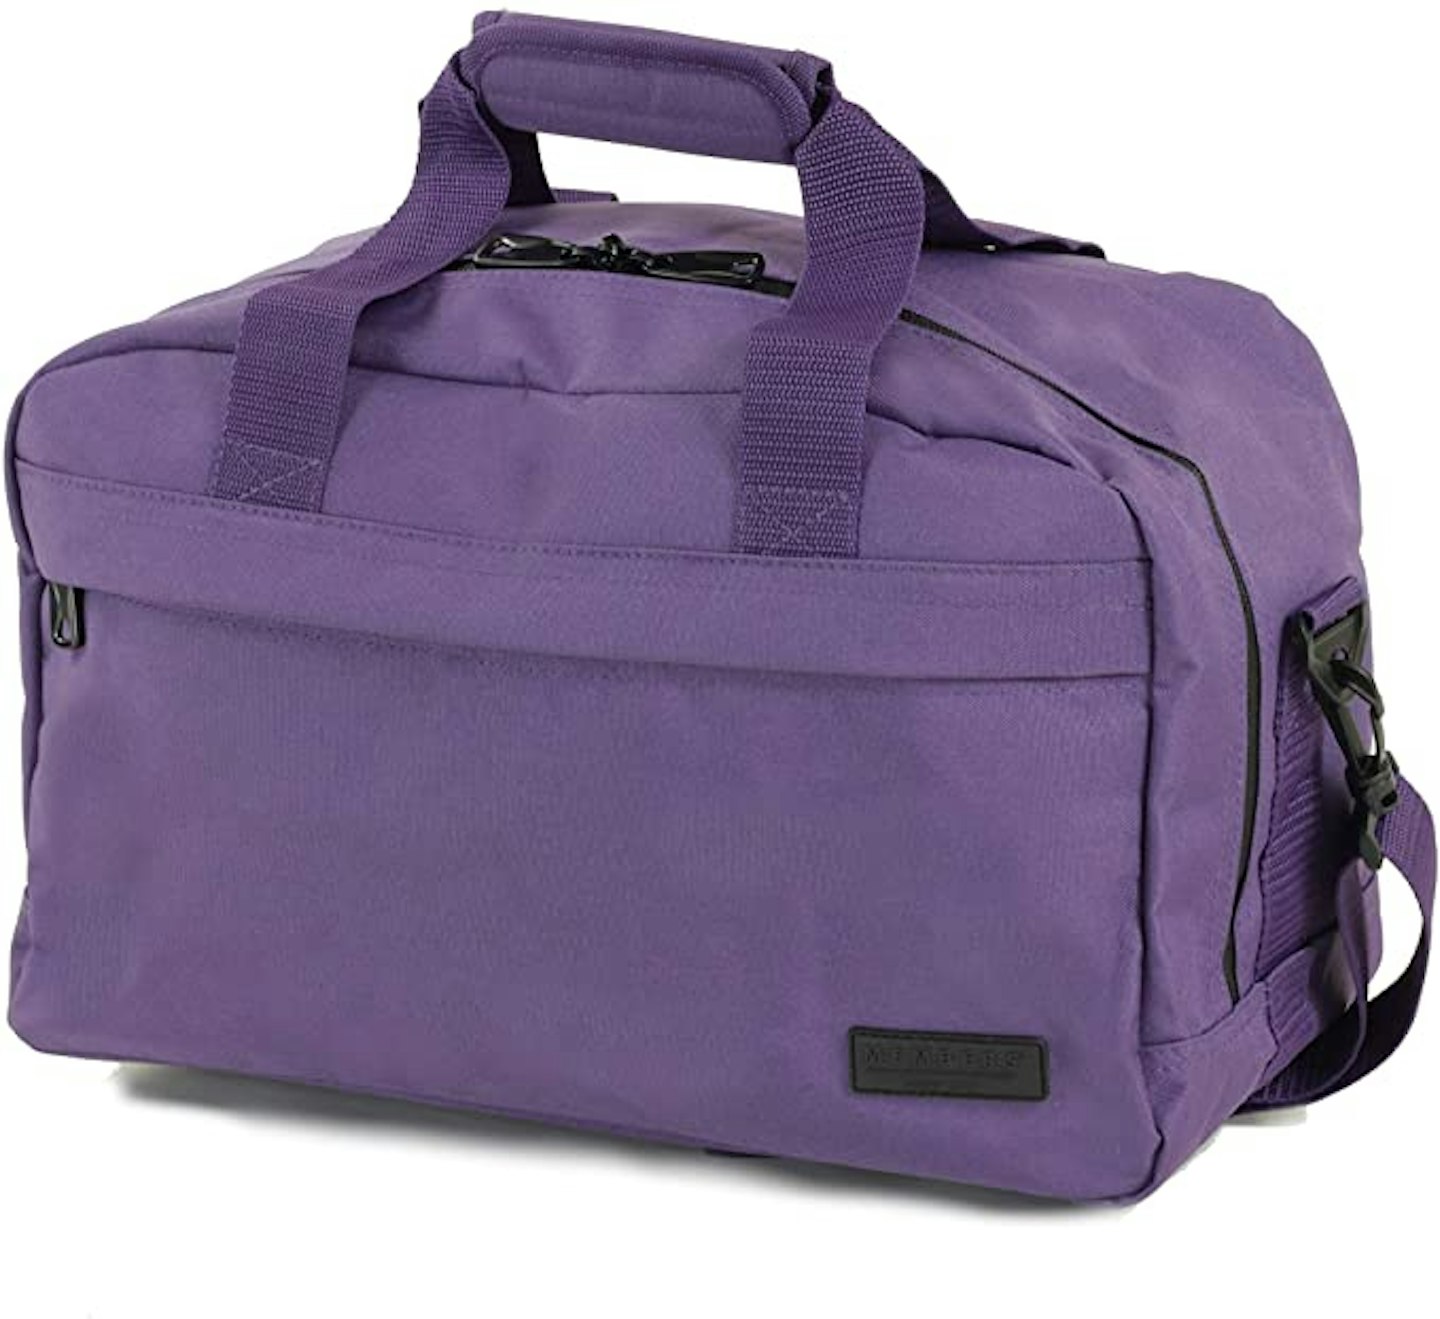 member essential easyjet ryanair luggage bag